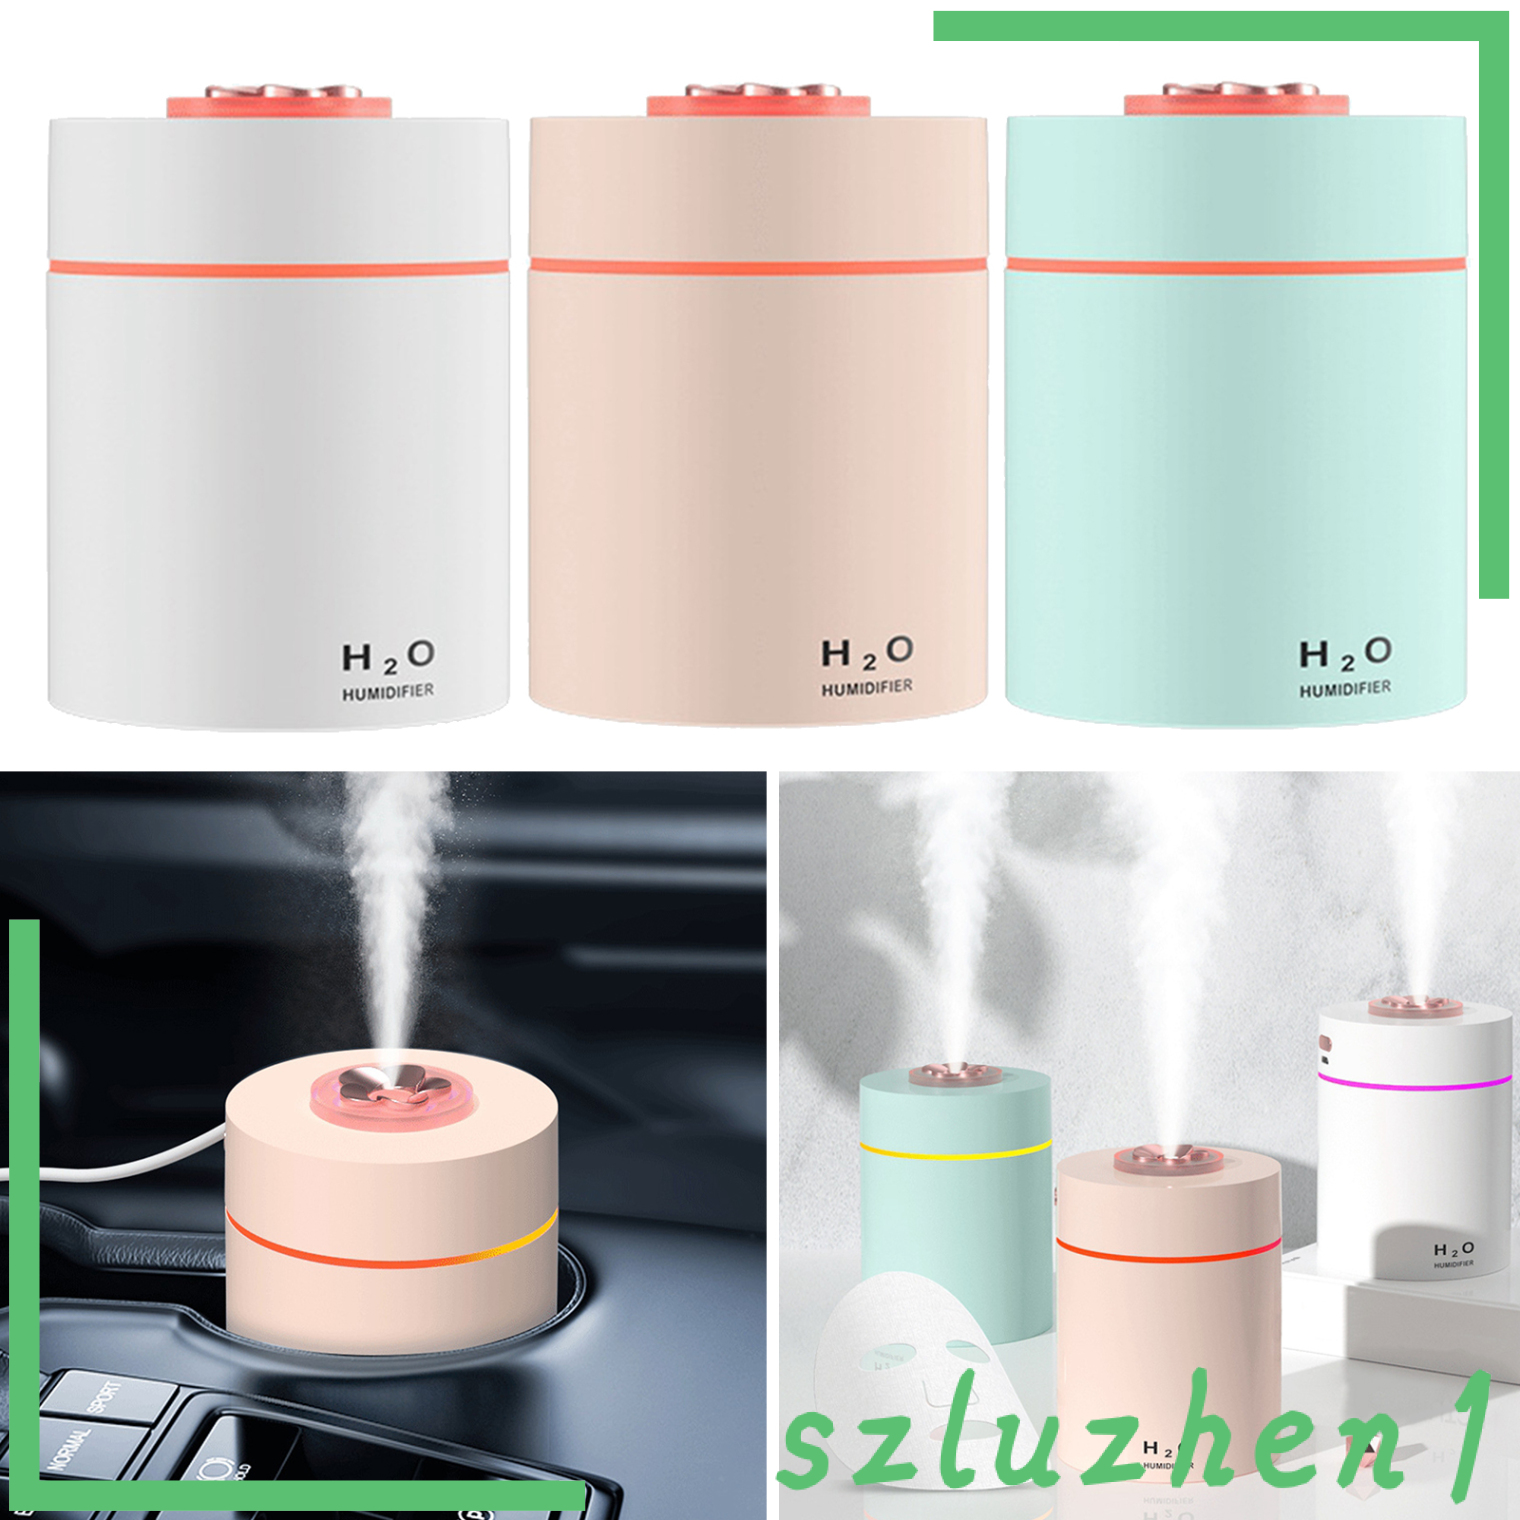 [Hi-tech] 240ml Mini Ultrasonic Humidifier USB Auto Shut-Off Aroma Diffuser White